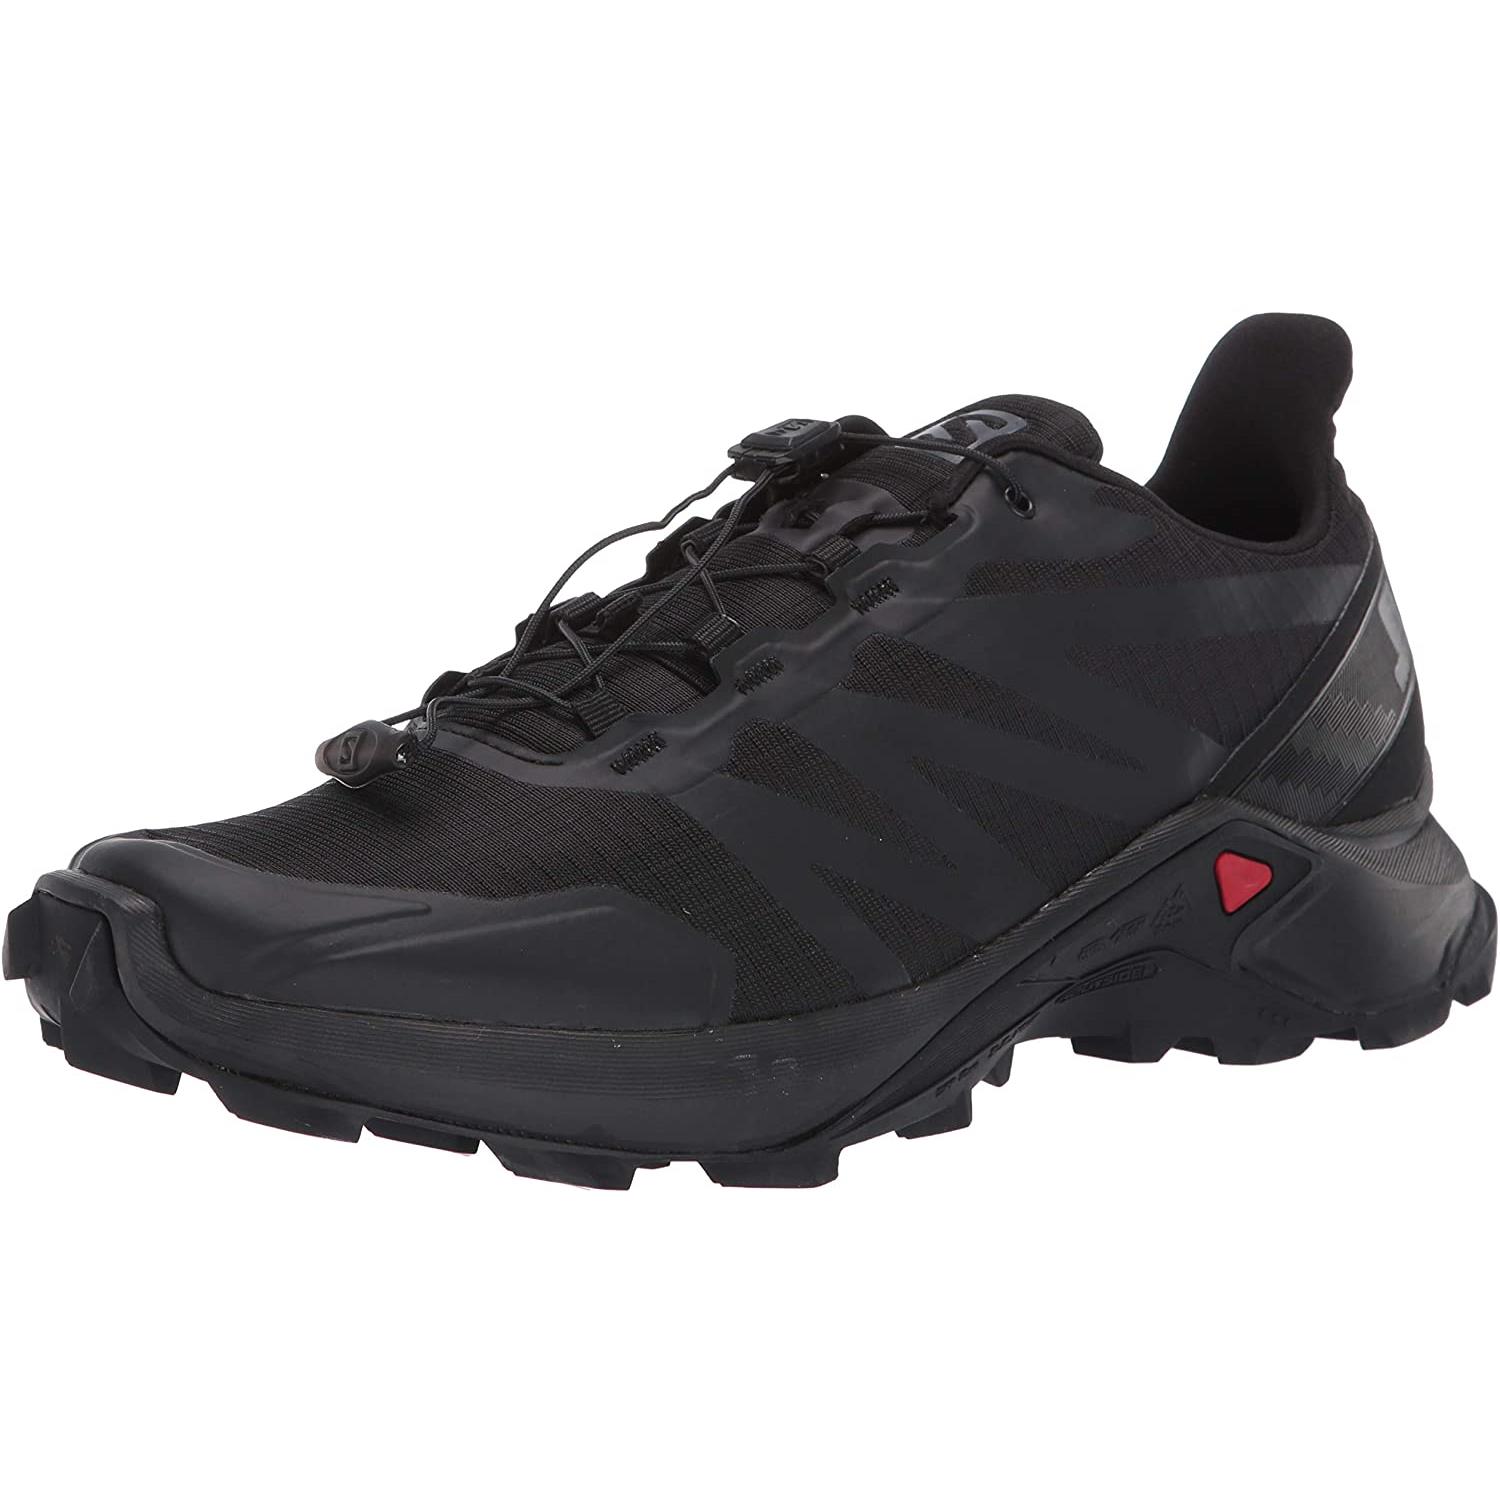 Salomon Men`s Supercross Hiking Shoes Black/Black/Black